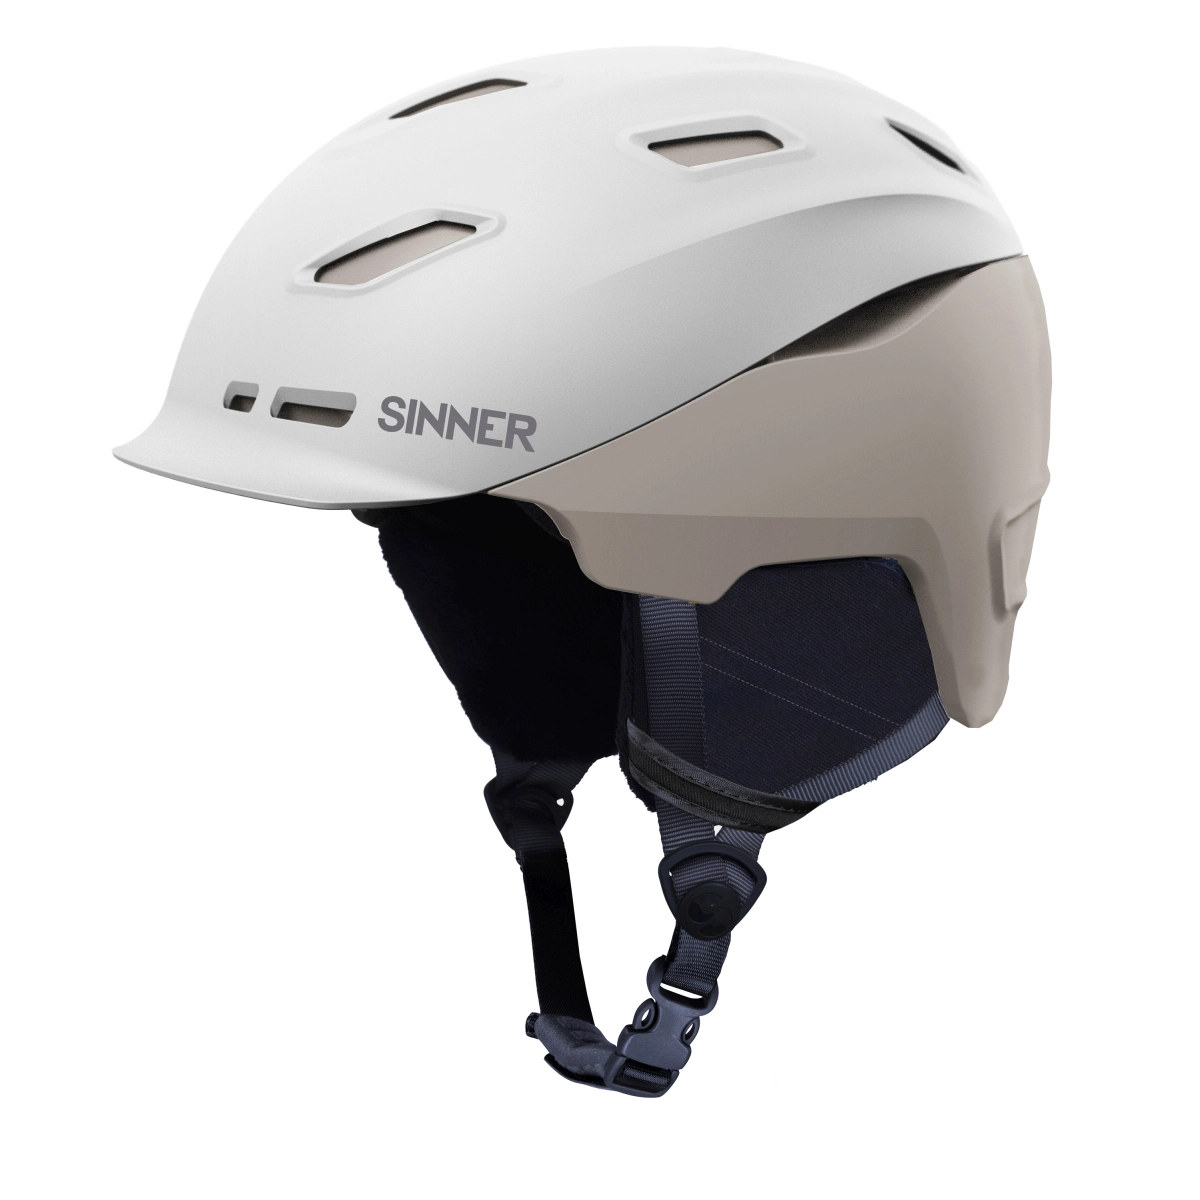 het einde Rationeel handleiding Sinner Moonstone skihelm - Helmen - Accessoires - Wintersport - Intersport  van den Broek / Biggelaar